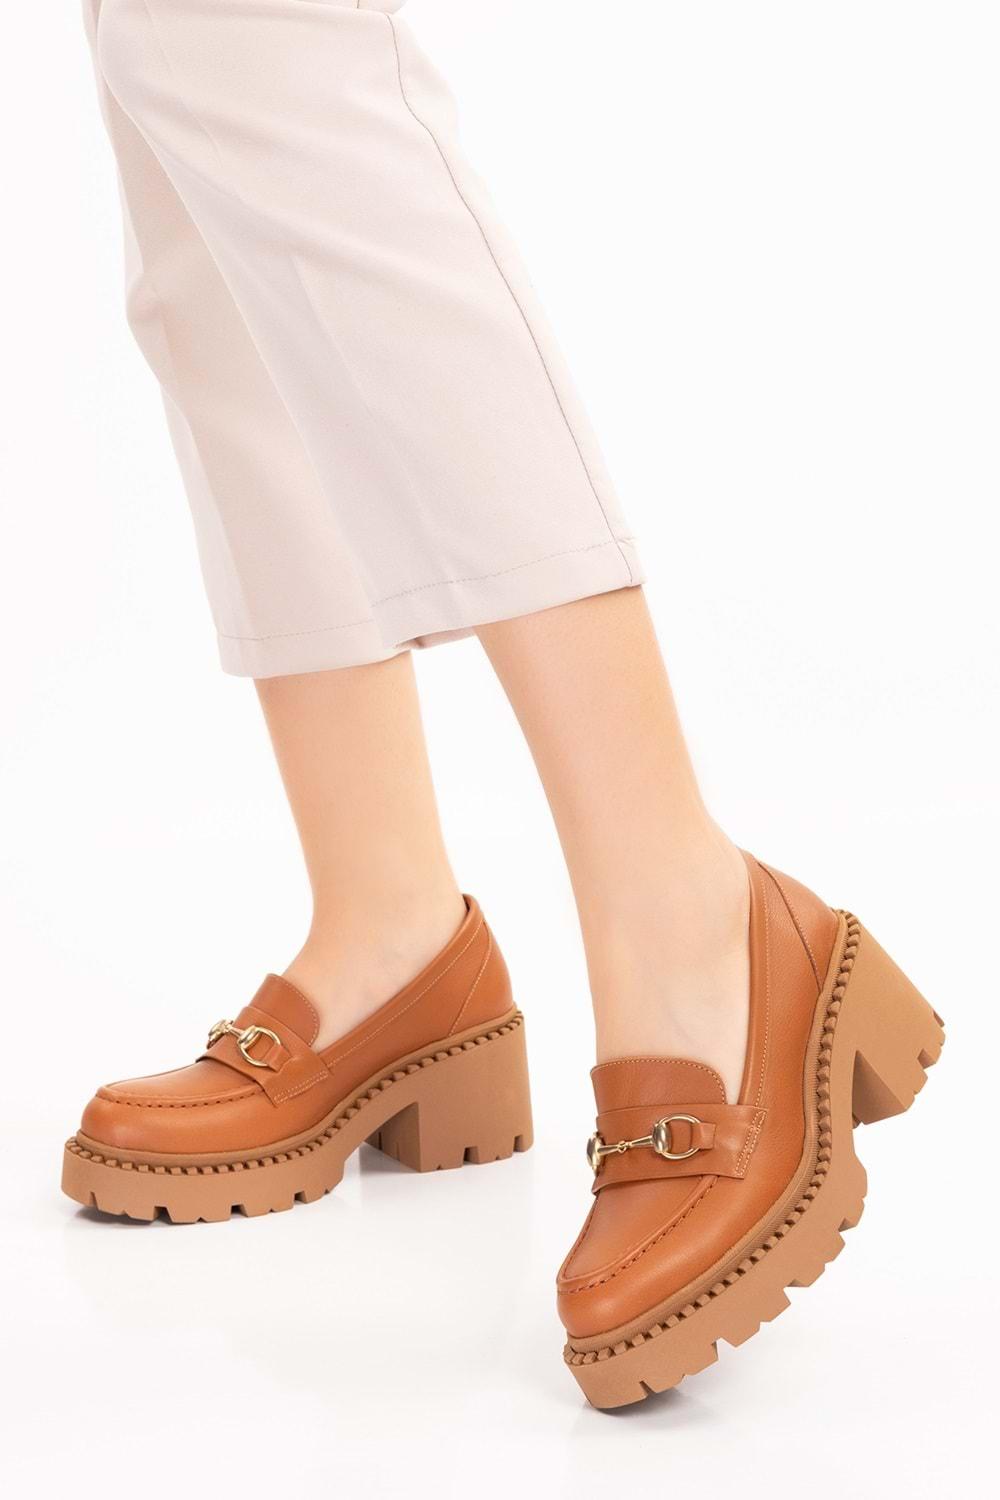 Gondol Hakiki Deri Kalın Taban Platform Topuklu Ayakkabı vtg.23803 - Taba - 40